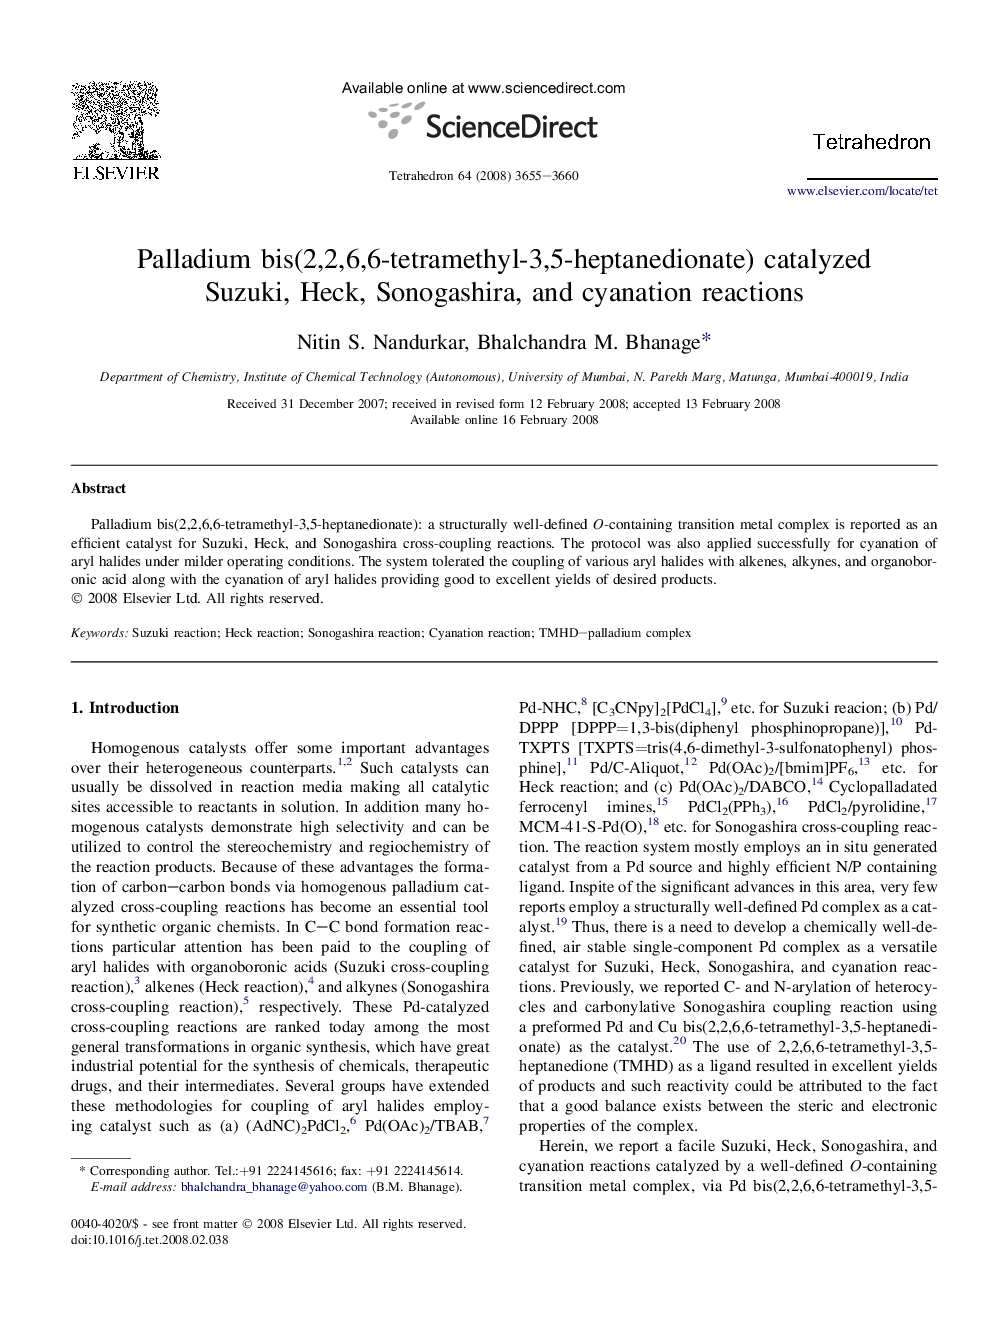 Palladium bis(2,2,6,6-tetramethyl-3,5-heptanedionate) catalyzed Suzuki, Heck, Sonogashira, and cyanation reactions